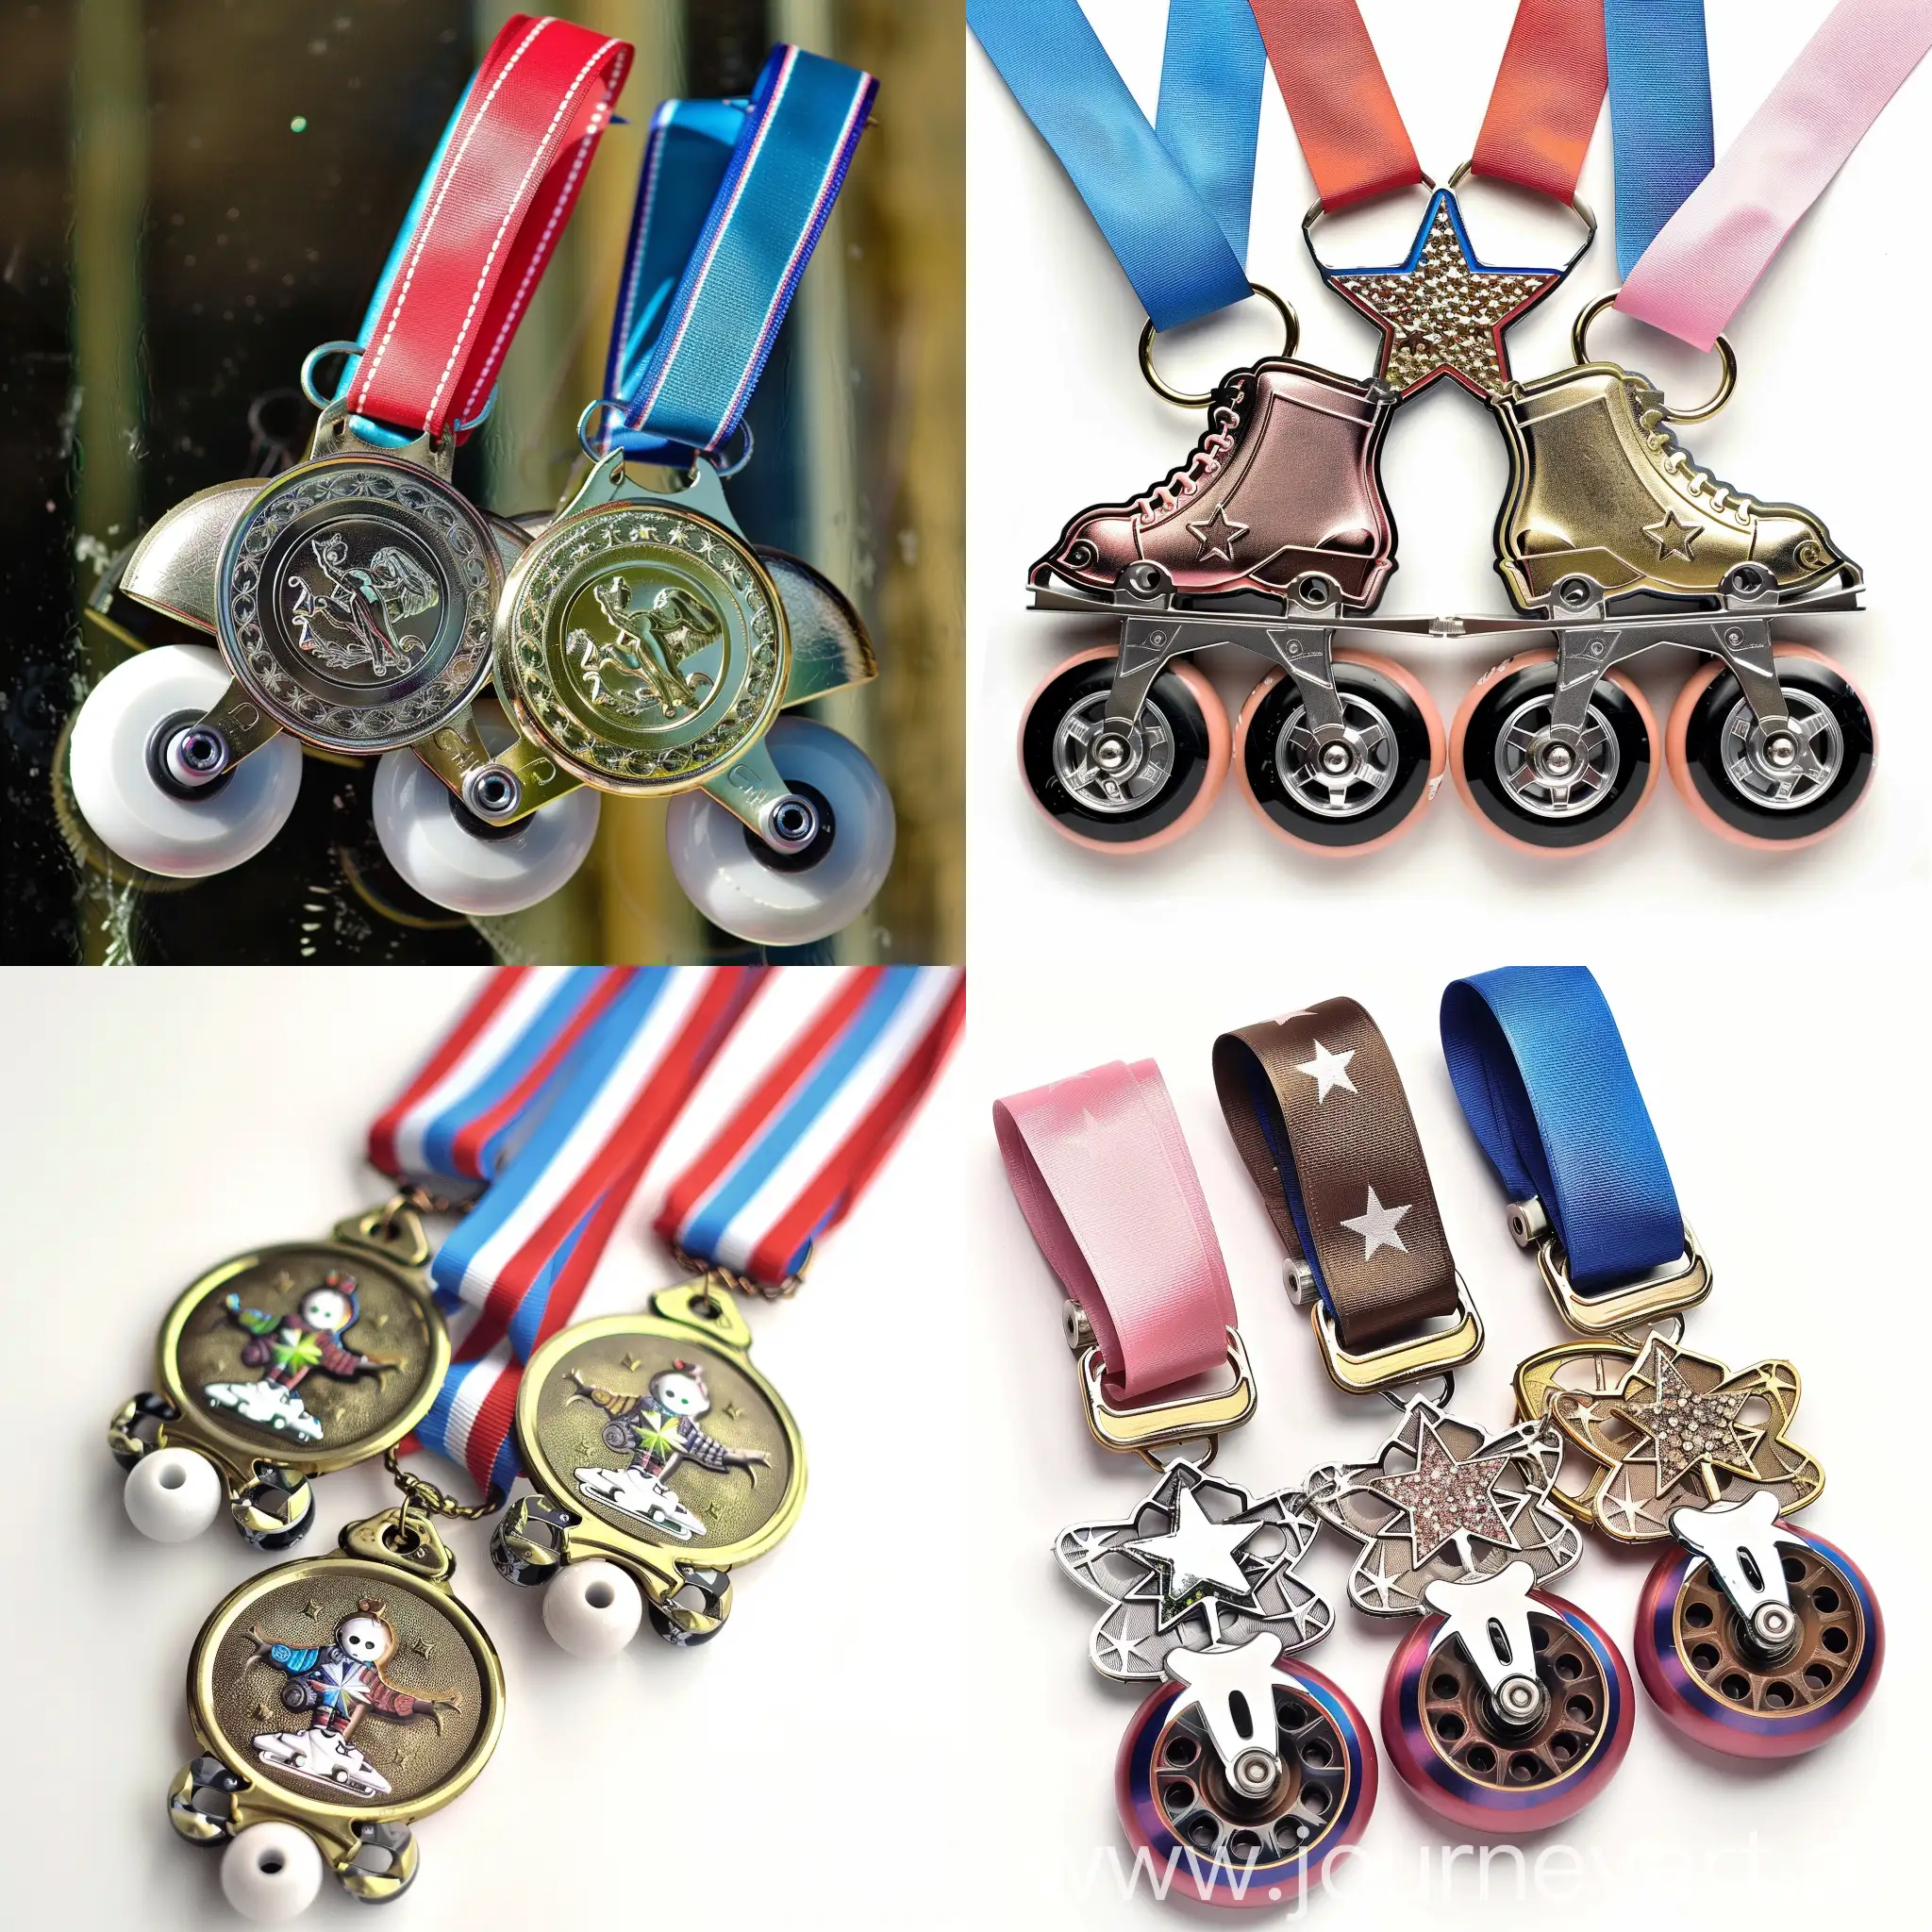 Roller skating medals for kids